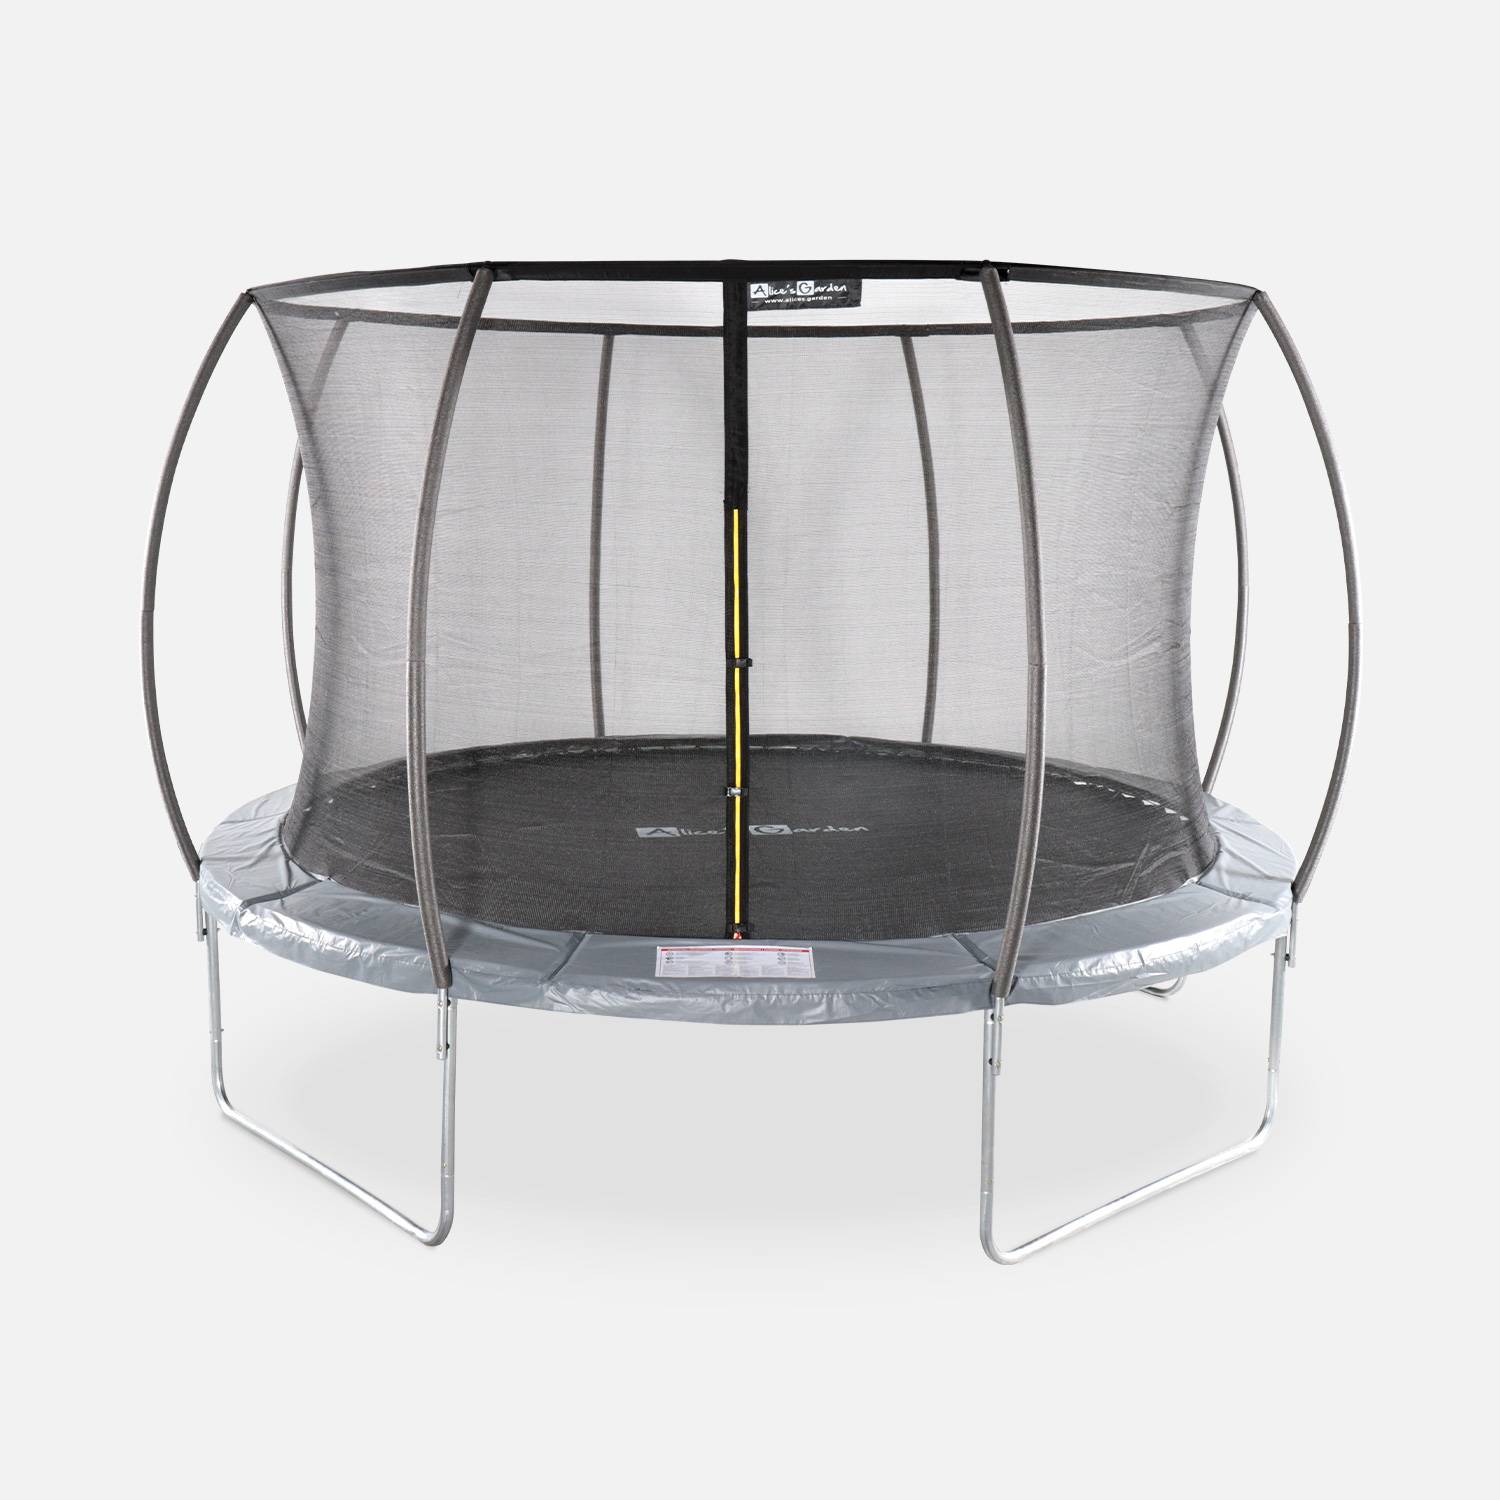 Trampoline rond Ø 370cm gris avec filet de protection intérieur - Saturne Inner – Nouveau modèle - trampoline de jardin 3,7m 370 cm |Design| Qualité PRO. | Normes EU. Photo1